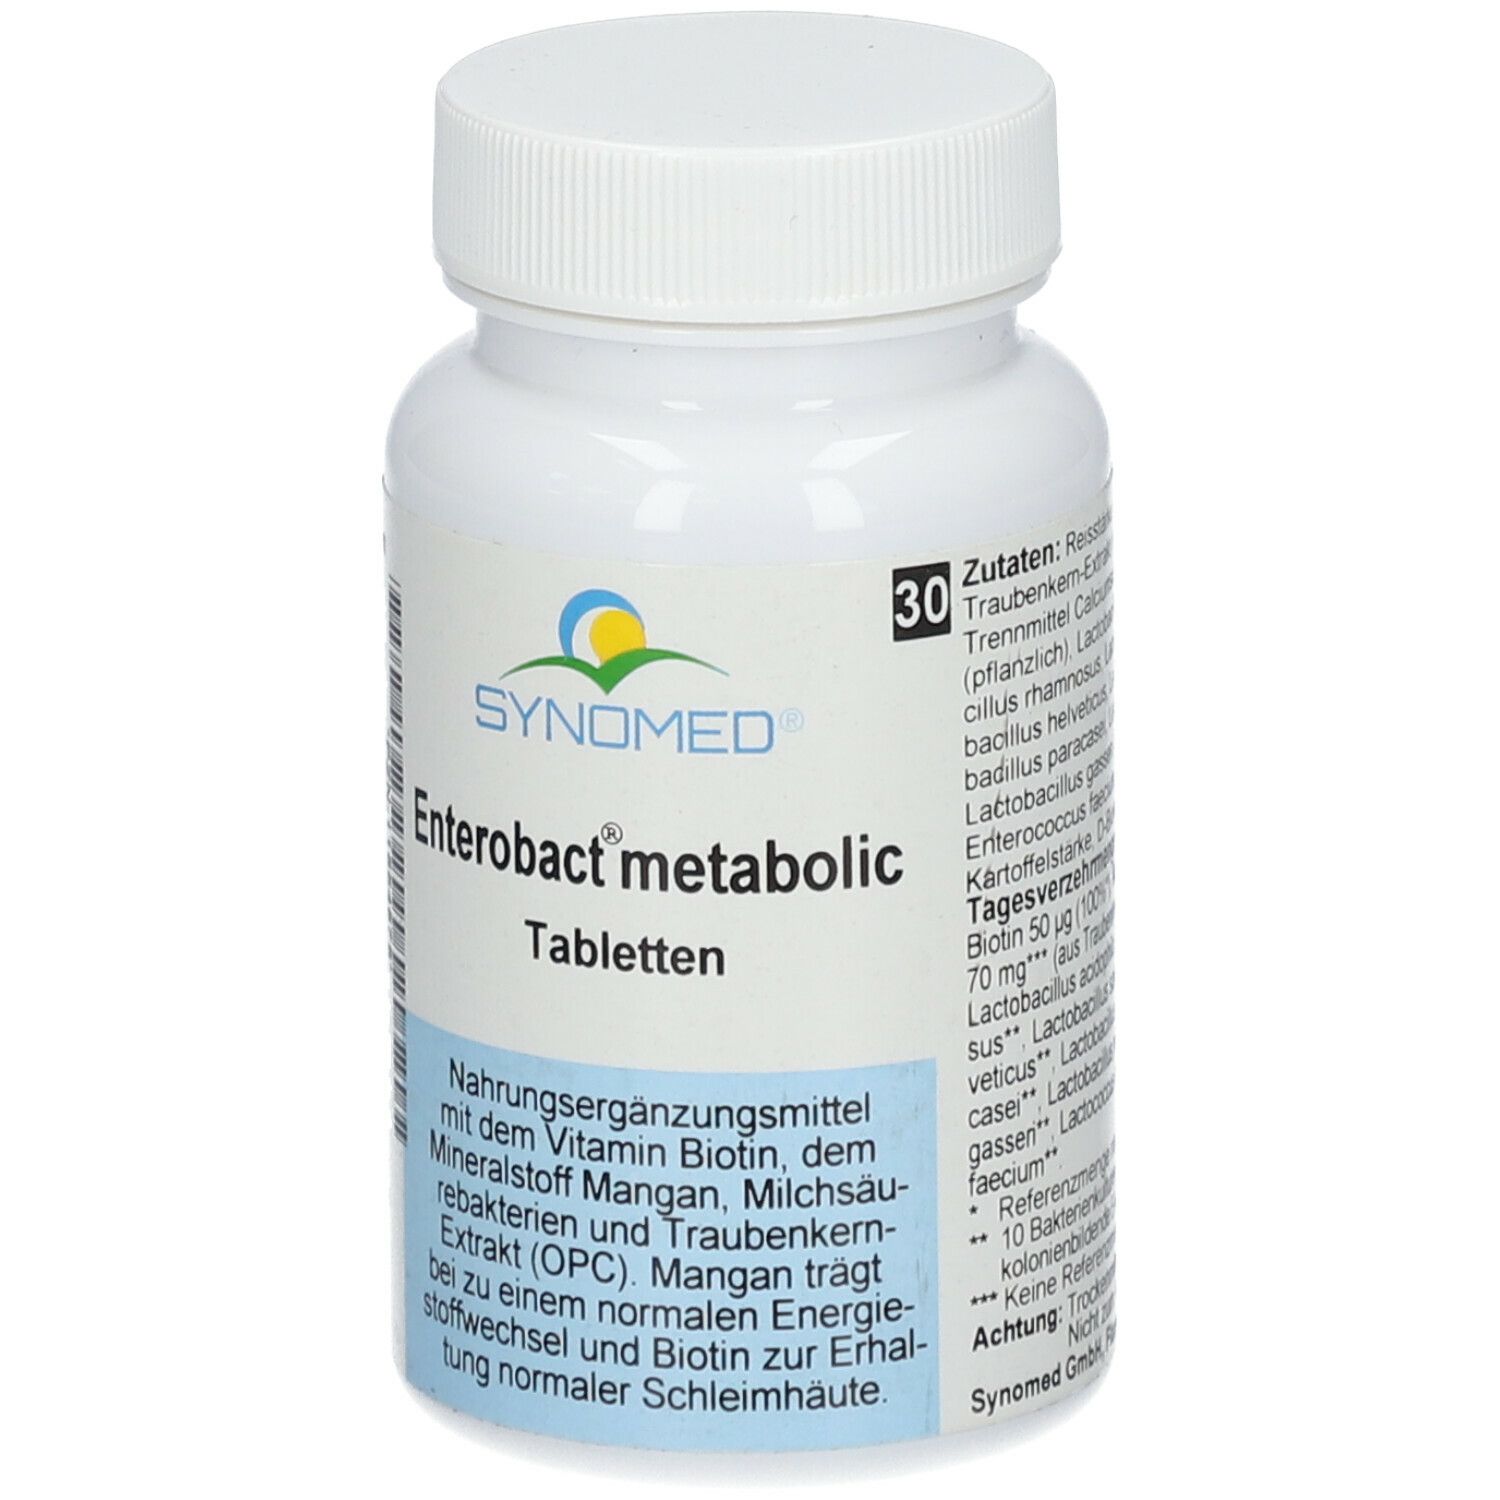 SYNOMED Enterobact® metabolic